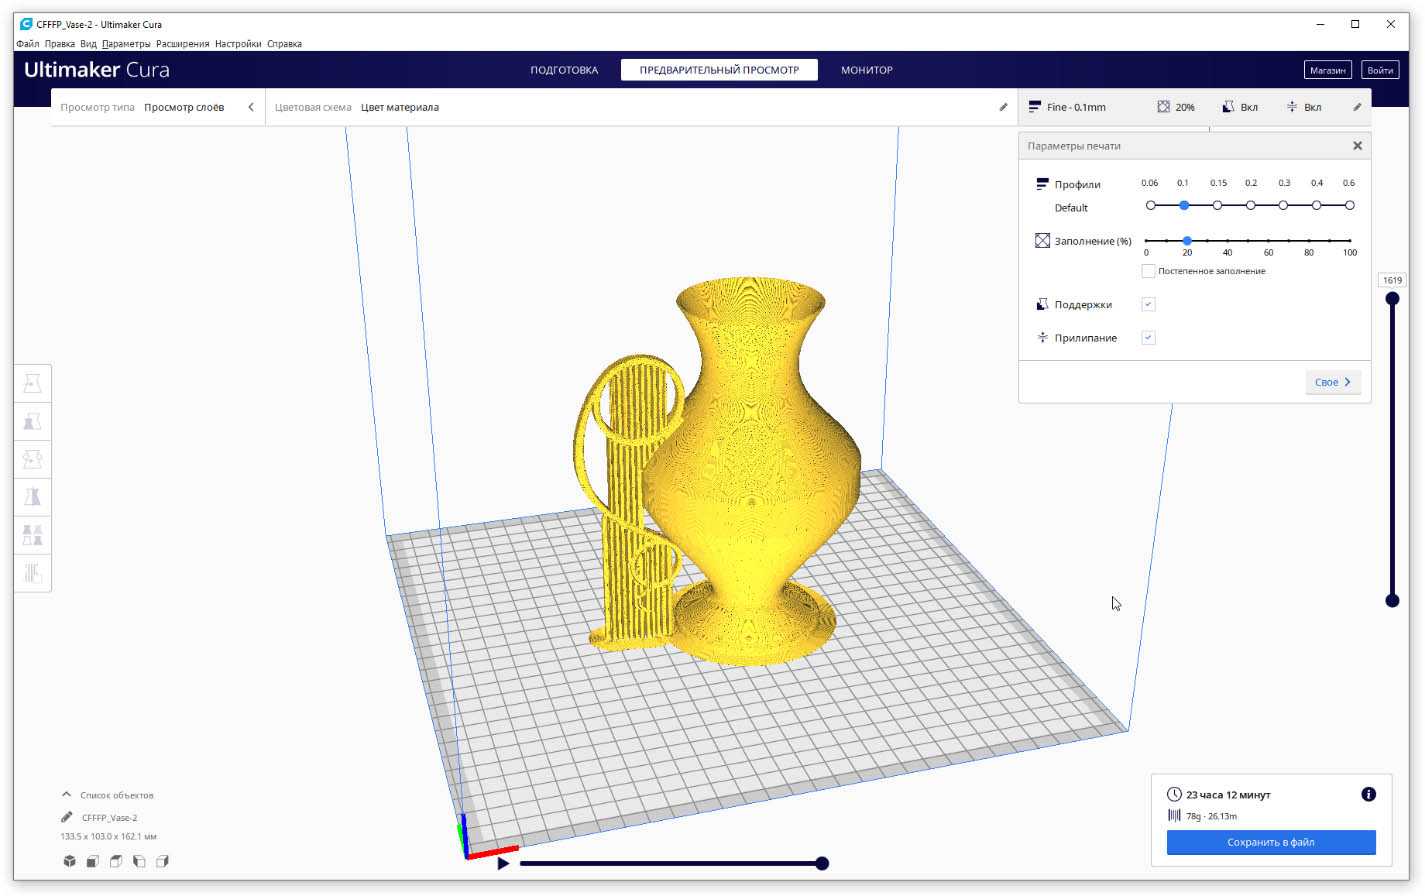 Рекомендации для подбору параметров Cura, которые помогут вам добиться качественной 3D печати